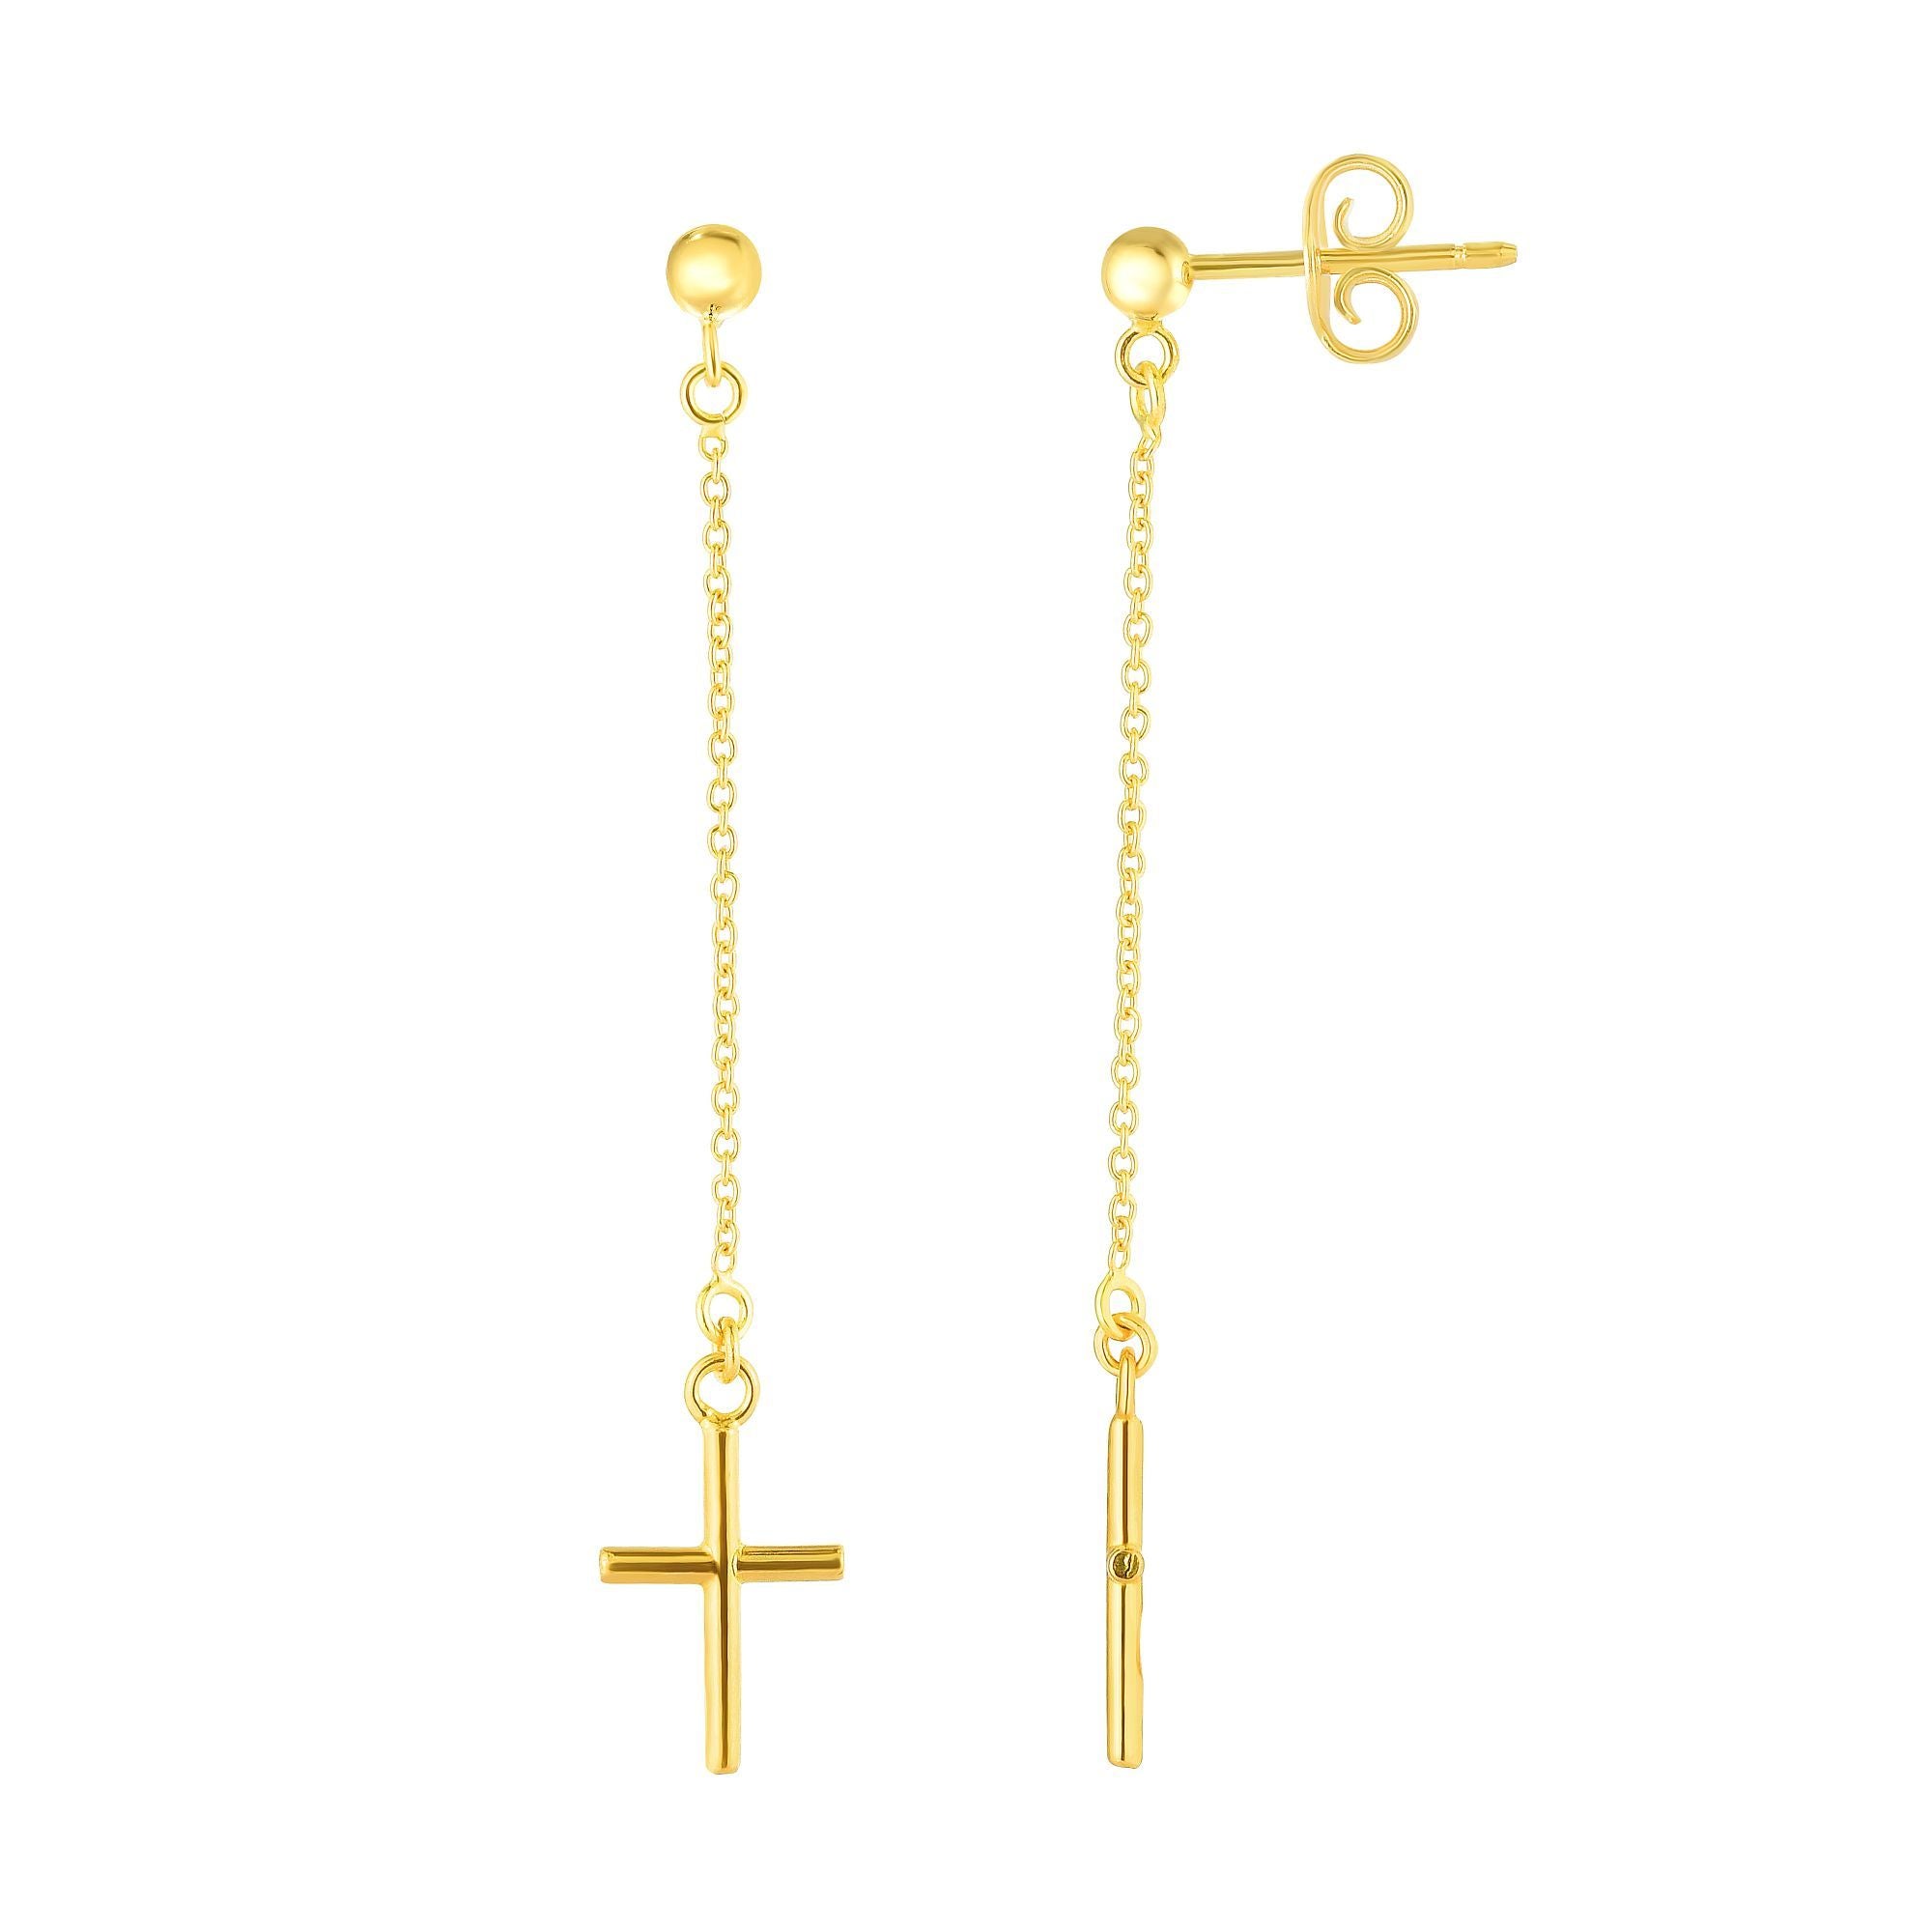 14K gult guld hängande kors charm örhängen fina designersmycken för män och kvinnor